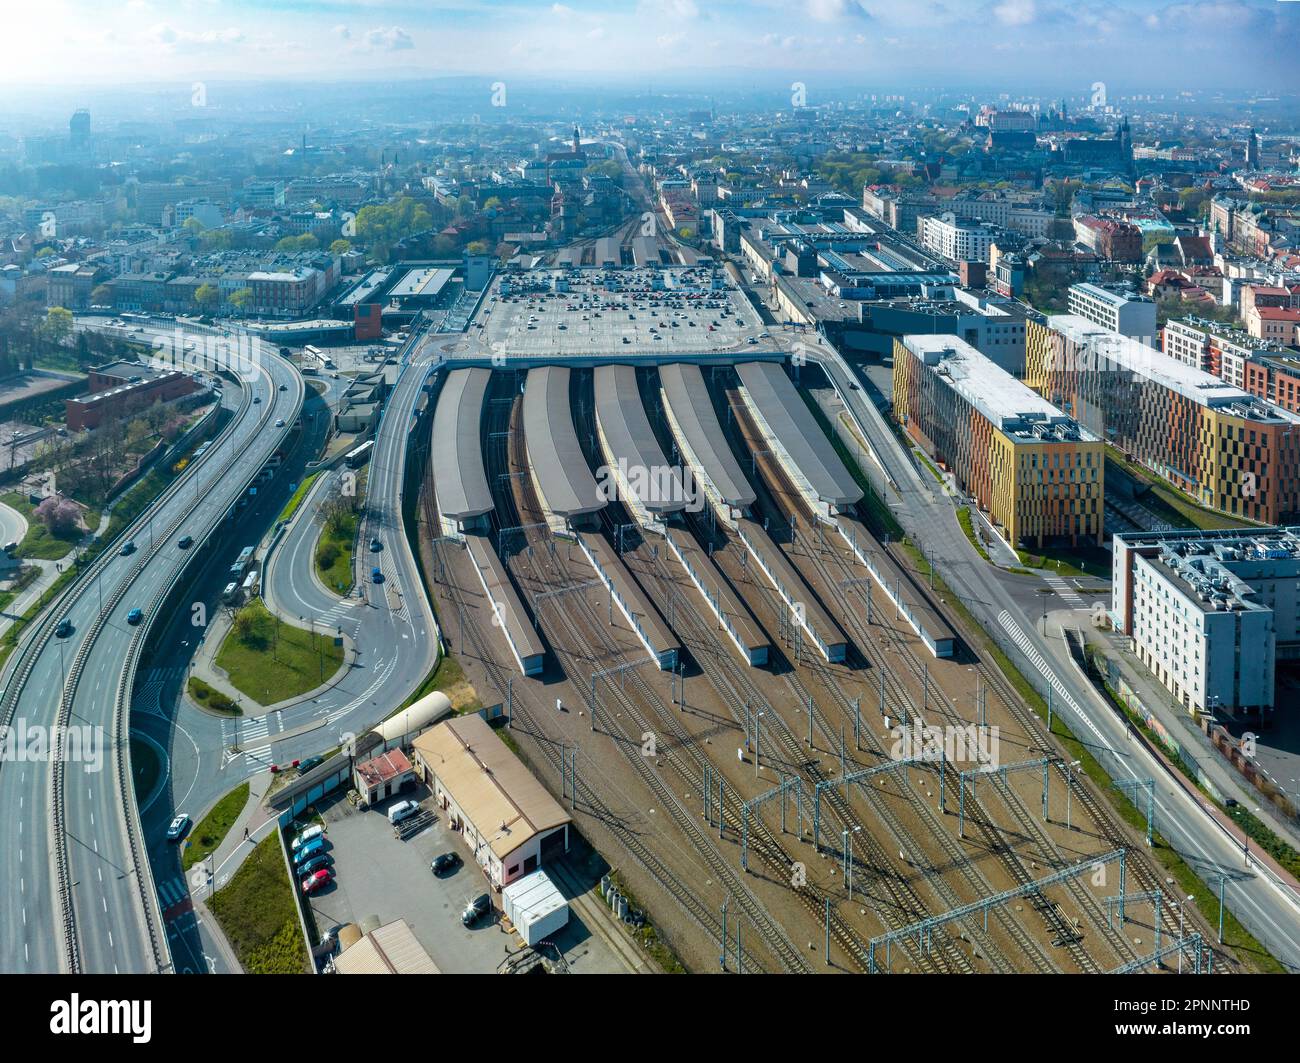 Krakau, Polen. Stadtbild mit Hauptbahnhof und großem Parkplatz auf dem Dach. Erhöhte Stadtautobahn mit Kreuzungen, Drehkreuzen und Rampen. Alter Abschleppwagen Stockfoto